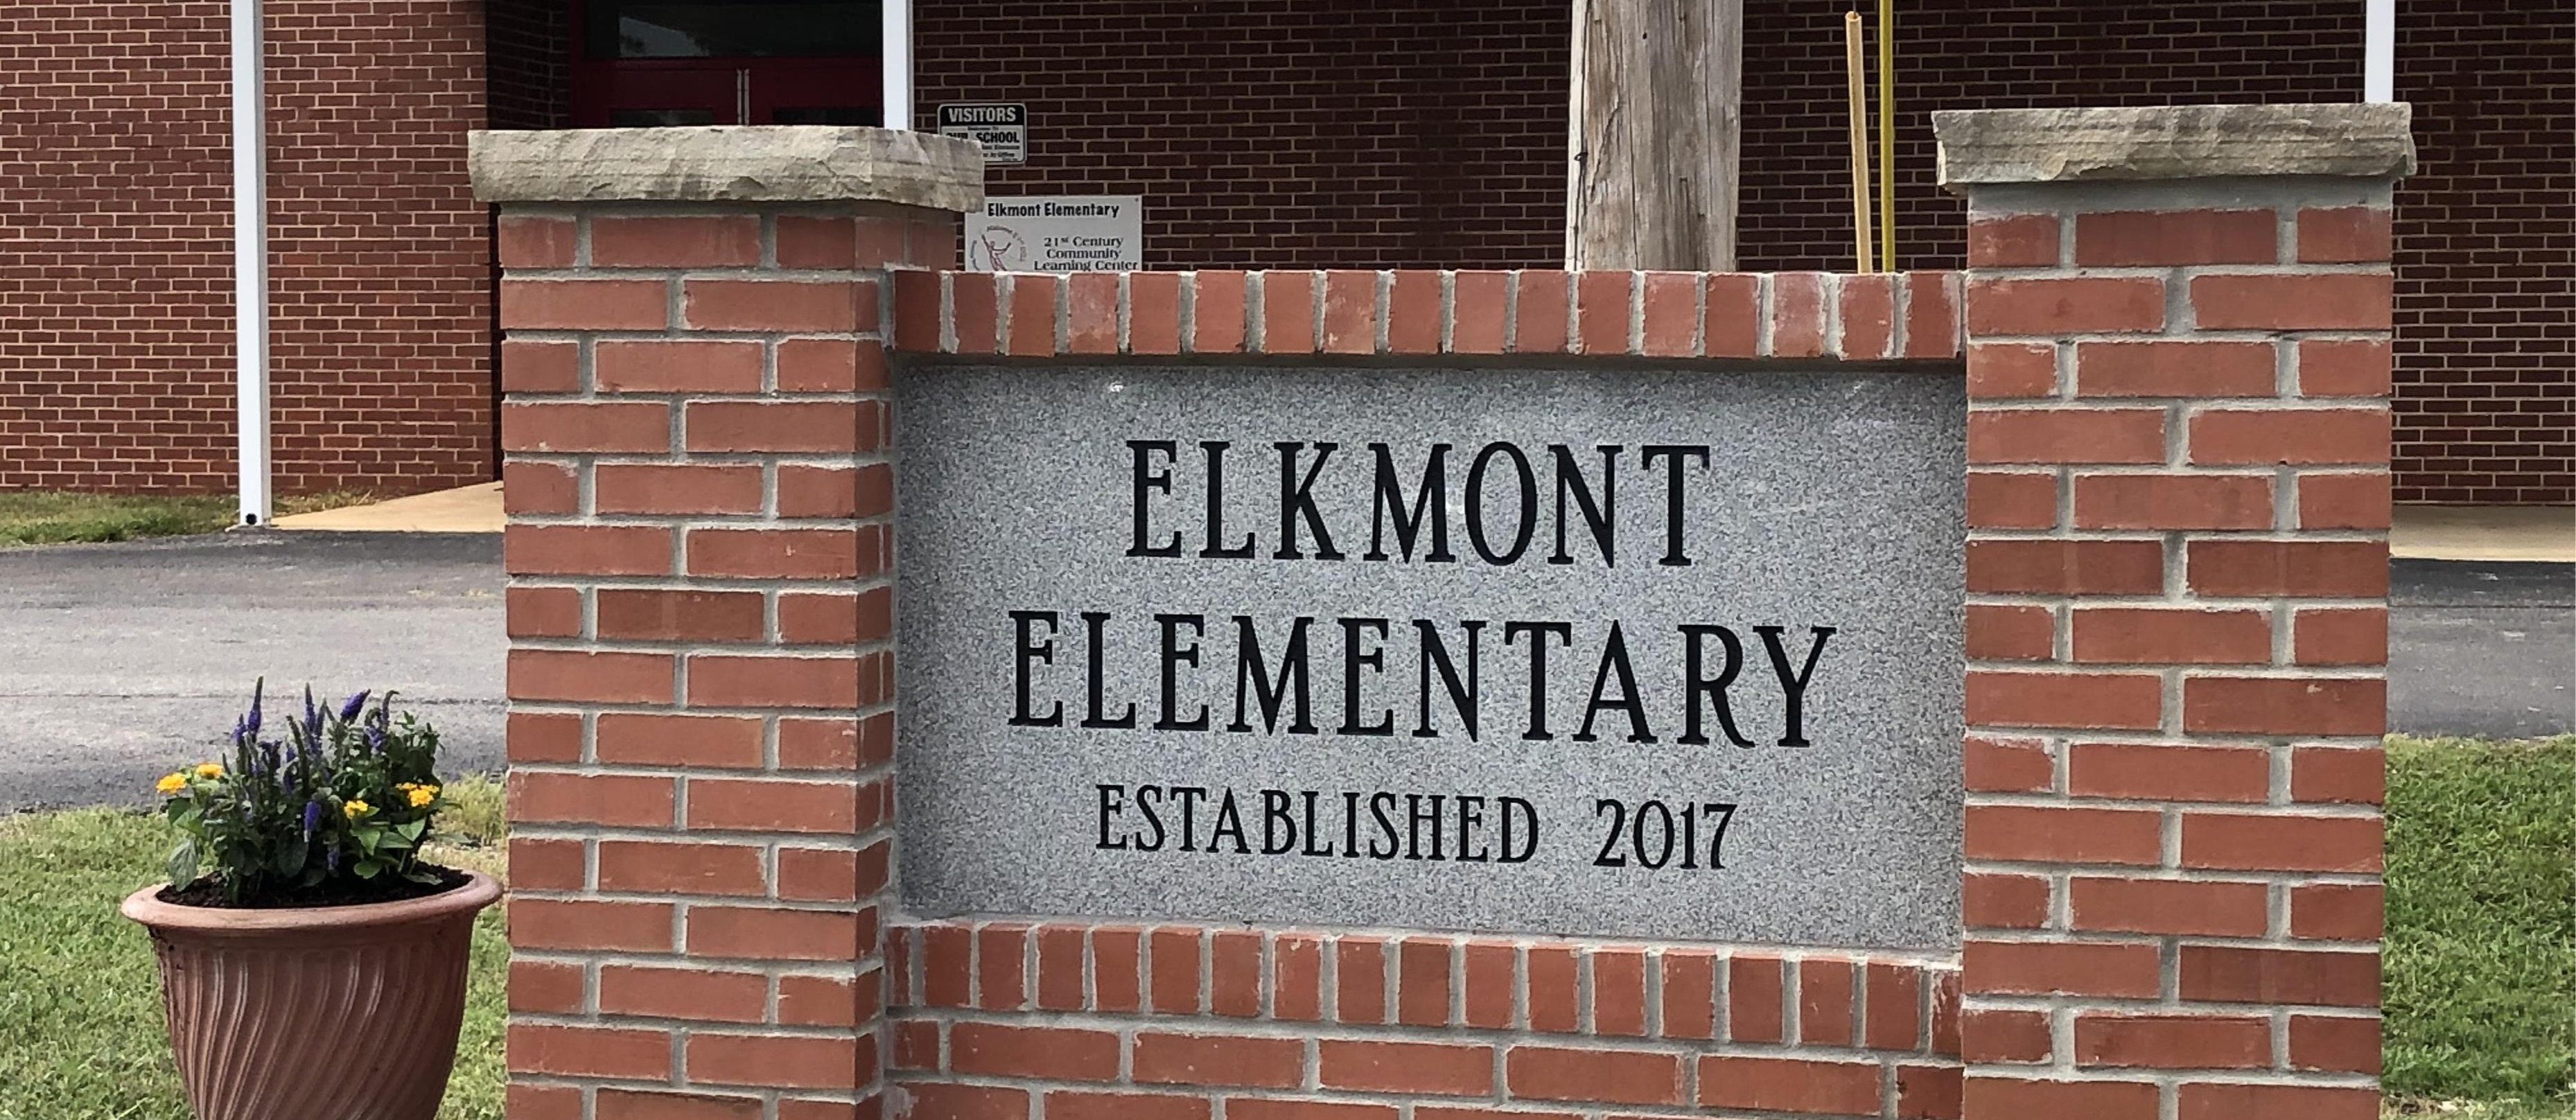 front of elkmont elementary school